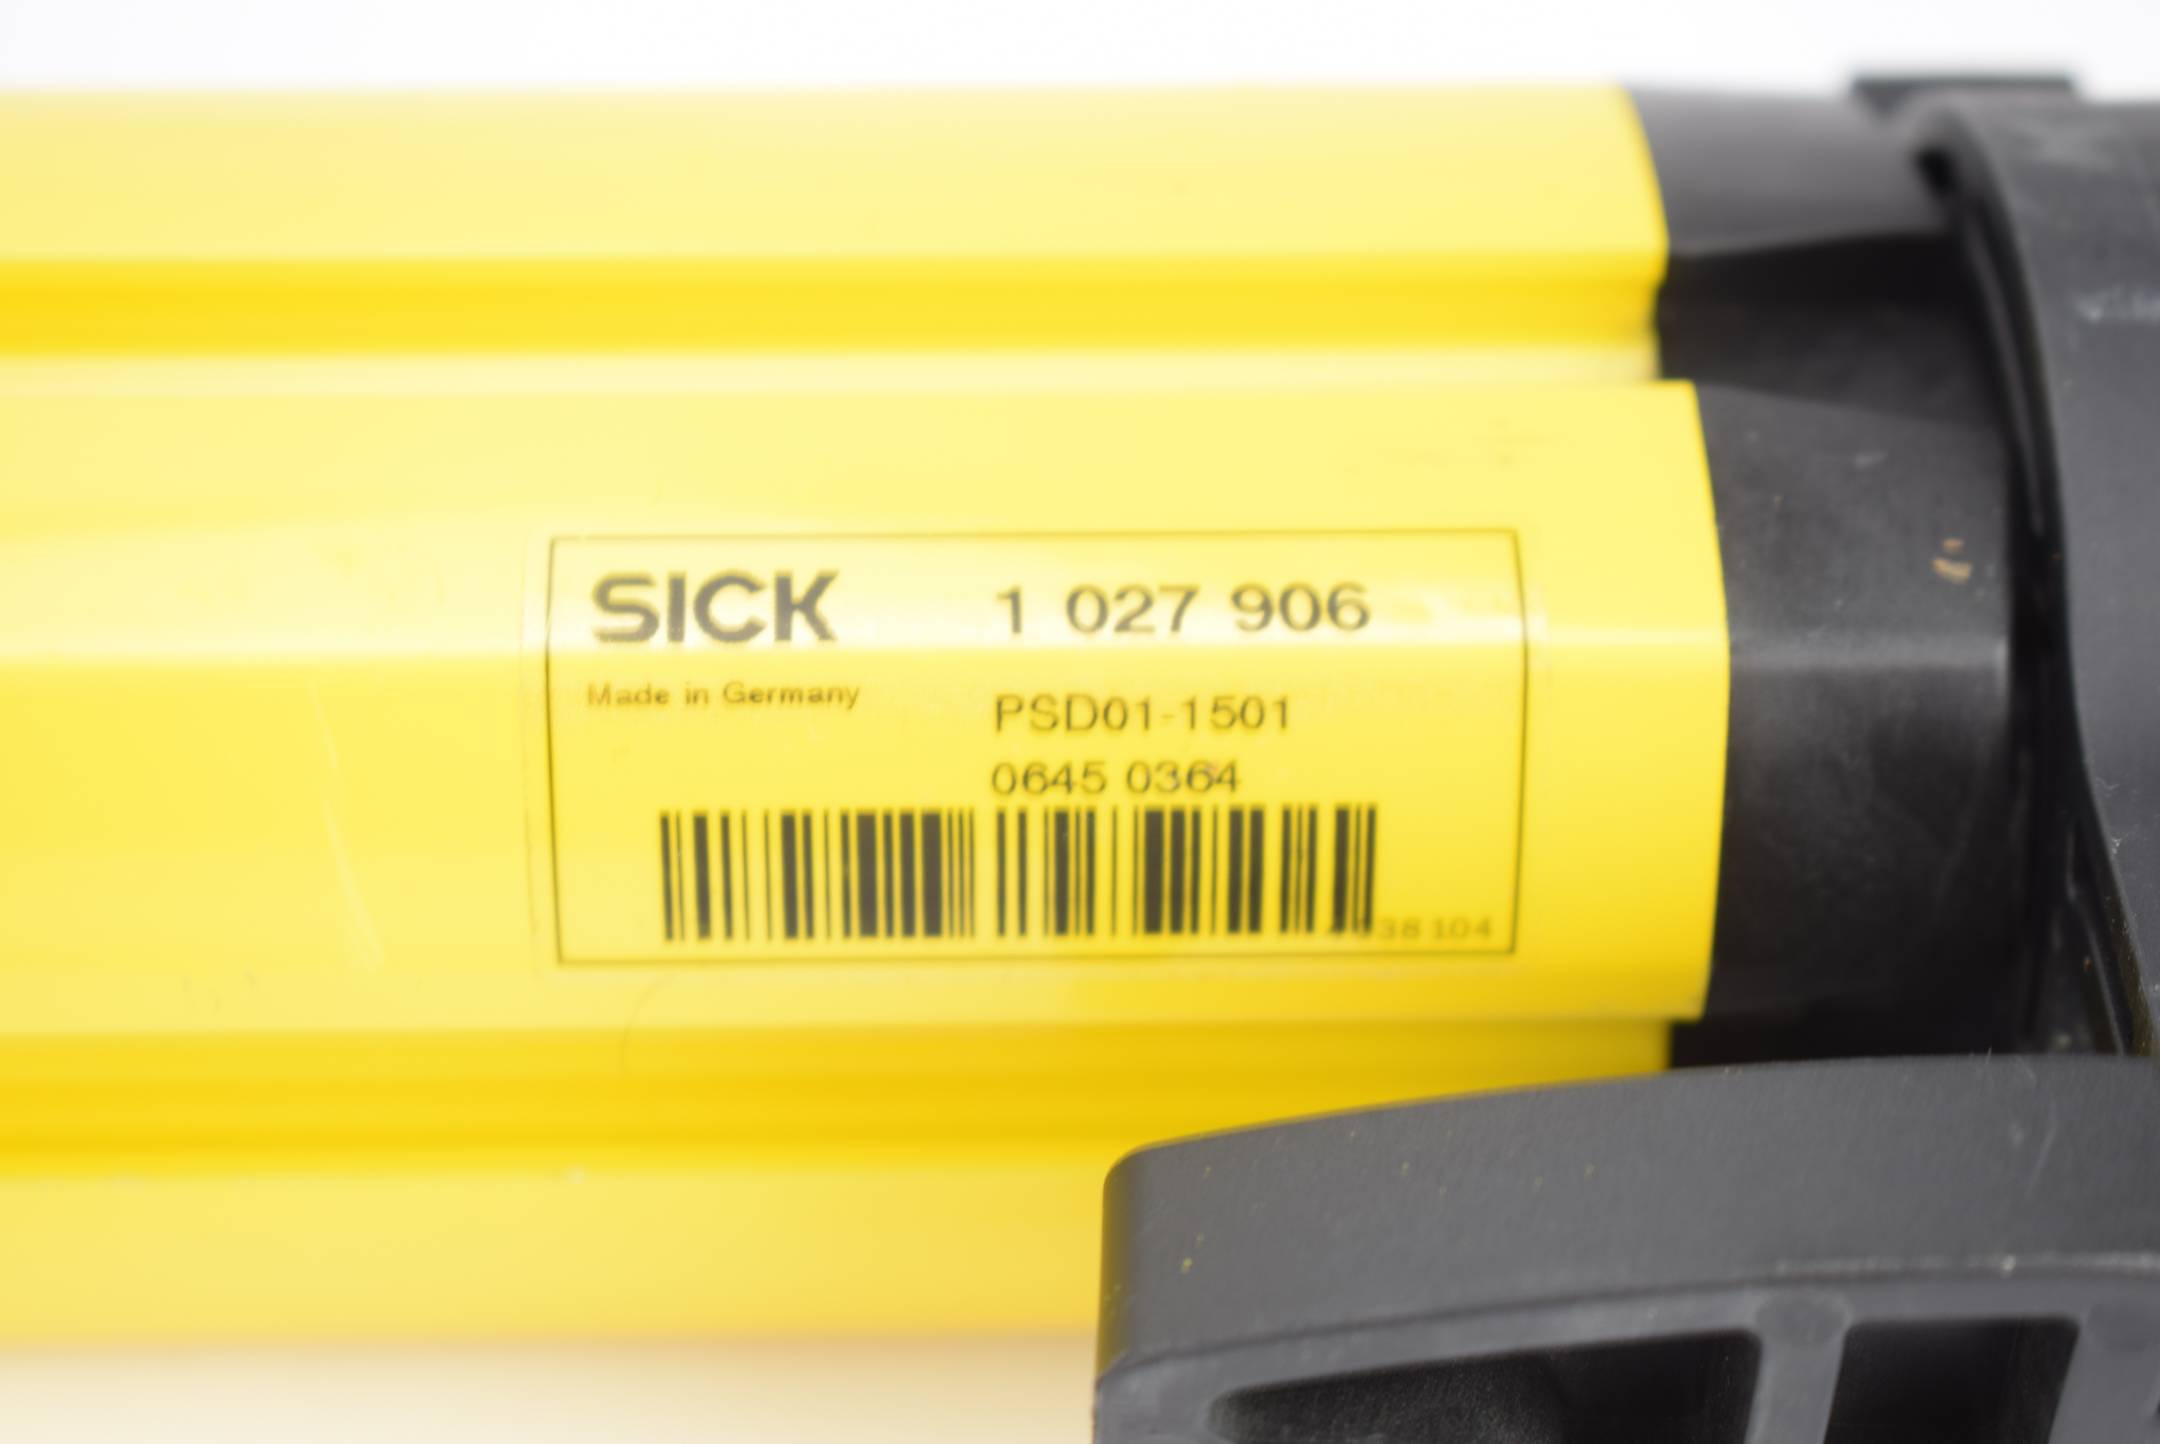 SICK Mehrstrahl-Sicherheits-Lichtschranken PSD01-1501 1 027 906 ( 1027906 )